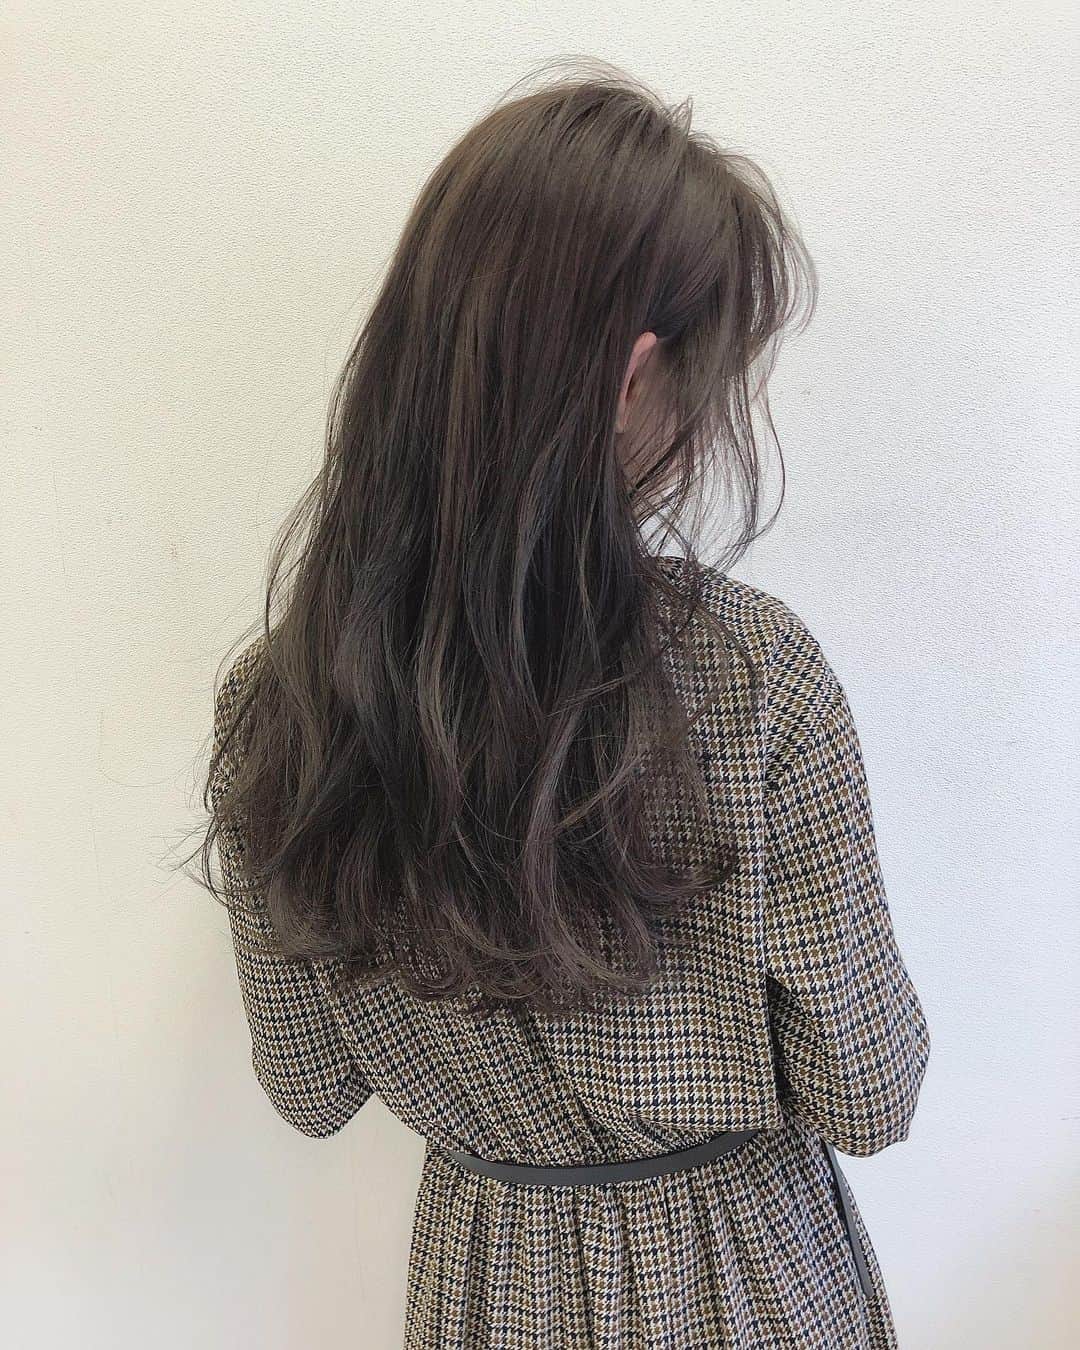 白岩まちこさんのインスタグラム写真 - (白岩まちこInstagram)「≫≫🧸... 𝚑𝚊𝚒𝚛 𝚌𝚘𝚕𝚘𝚛  ㅤㅤㅤㅤㅤㅤㅤㅤㅤㅤㅤㅤㅤ 年内最後のカットカラーに行ってきた☺️✨ ㅤㅤㅤㅤㅤㅤㅤㅤㅤㅤㅤㅤㅤ ㅤㅤㅤㅤㅤㅤㅤㅤㅤㅤㅤㅤㅤ 💇🏼‍♀️　@narisawa_taiki ㅤㅤㅤㅤㅤㅤㅤㅤㅤㅤㅤㅤㅤ ㅤㅤㅤㅤㅤㅤㅤㅤㅤㅤㅤㅤㅤ ㅤㅤㅤㅤㅤㅤㅤㅤㅤㅤㅤㅤㅤ 最近ずっと明るめカラーやったし、 私の髪の毛はすぐに退色するから、 久しぶりに暗めに😘‼️ ㅤㅤㅤㅤㅤㅤㅤㅤㅤㅤㅤㅤㅤ ㅤㅤㅤㅤㅤㅤㅤㅤㅤㅤㅤㅤㅤ  ラベンダーアッシュ🦄✨ ㅤㅤㅤㅤㅤㅤㅤㅤㅤㅤㅤㅤㅤ ㅤㅤㅤㅤㅤㅤㅤㅤㅤㅤㅤㅤㅤ ㅤㅤㅤㅤㅤㅤㅤㅤㅤㅤㅤㅤㅤ 色が抜けていくのも楽しみやなぁ😆💓 ㅤㅤㅤㅤㅤㅤㅤㅤㅤㅤㅤㅤㅤ  ㅤㅤㅤㅤㅤㅤㅤㅤㅤㅤㅤㅤㅤ 毛先も整えてもらって、 トレードマークのシースルーバングも 復活🥺💓 ㅤㅤㅤㅤㅤㅤㅤㅤㅤㅤㅤㅤㅤ ㅤㅤㅤㅤㅤㅤㅤㅤㅤㅤㅤ  新規のお客様対象の１２月限定クーポンを作ったらしいから、年末までにメンテナンスしたいっていう子は 《まちこのインスタ見たっ😙👌🏻》って予約してね☺️🌿 ㅤㅤㅤㅤㅤㅤㅤㅤㅤㅤㅤㅤㅤ ㅤㅤㅤㅤㅤㅤㅤㅤㅤㅤㅤㅤㅤ  ㅤㅤㅤㅤㅤㅤㅤㅤㅤㅤㅤㅤㅤ ㅤㅤㅤㅤㅤㅤㅤㅤㅤㅤㅤㅤㅤ ✨12月【ご新規様】限定クーポン✨ ㅤㅤㅤㅤㅤㅤㅤㅤㅤㅤㅤㅤㅤ ㅤㅤㅤㅤㅤㅤㅤㅤㅤㅤㅤㅤㅤ 【ベーシック】 ㅤㅤㅤㅤㅤㅤㅤㅤㅤㅤㅤㅤㅤ ・カット & カラー5900円 【ワンカラーの最大限の透明感と艶髪】 ㅤㅤㅤㅤㅤㅤㅤㅤㅤㅤㅤㅤㅤ ㅤㅤㅤㅤㅤㅤㅤㅤㅤㅤㅤㅤㅤ ・カット & イルミナカラー & キラ水 & トリートメント 13000円  ㅤㅤㅤㅤㅤㅤㅤㅤㅤㅤㅤㅤㅤ ㅤㅤㅤㅤㅤㅤㅤㅤㅤㅤㅤㅤㅤ 【赤味、オレンジ味を抹消！今までにない透明感、立体感】 ㅤㅤㅤㅤㅤㅤㅤㅤㅤㅤㅤㅤㅤ ・カット & 糸ハイライト 16000~19800円 ㅤㅤㅤㅤㅤㅤㅤㅤㅤㅤㅤㅤㅤ ㅤㅤㅤㅤㅤㅤㅤㅤㅤㅤㅤㅤㅤ 【自分史上最高の艶髪へ】 ・髪質改善トリートメント 9000円  ㅤㅤㅤㅤㅤㅤㅤㅤㅤㅤㅤㅤㅤ ㅤㅤㅤㅤㅤㅤㅤㅤㅤㅤㅤㅤㅤ 予約しましたっ💓っていう報告が チラホラ来てて嬉しい☺️💓 ㅤㅤㅤㅤㅤㅤㅤㅤㅤㅤㅤㅤㅤ ㅤㅤㅤㅤㅤㅤㅤㅤㅤㅤㅤㅤㅤ ㅤㅤㅤㅤㅤㅤㅤㅤㅤㅤㅤㅤㅤ ㅤㅤㅤㅤㅤㅤㅤㅤㅤㅤㅤㅤㅤ お揃いカラー、お揃いシースルーバングにしよう😌🌿 ㅤㅤㅤㅤㅤㅤㅤㅤㅤㅤㅤㅤㅤ ㅤㅤㅤㅤㅤㅤㅤㅤㅤㅤㅤㅤㅤ ㅤㅤㅤㅤㅤㅤㅤㅤㅤㅤㅤㅤㅤ ㅤㅤㅤㅤㅤㅤㅤㅤㅤㅤㅤㅤㅤ  ㅤㅤㅤㅤㅤㅤㅤㅤㅤㅤㅤㅤㅤ #白岩まちこ#ヘアカラー#カラー#ラベンダーアッシュ#外国人風カラー#外人風カラー #color#haircolor#クーポン#ヘアカラーアッシュ#アッシュカラー#アッシュグレー #ブリーチなし#イルミナ#イルミナカラー #外国人風ヘアー#振り向き#アッシュ #年末#クリスマス#カラコン#シースルーバング#メイク#梅田#大阪#大阪サロン#ロングヘア#ロングヘアー#ナチュラル#ゆる巻きㅤㅤㅤㅤㅤㅤㅤㅤㅤㅤㅤㅤㅤ」12月17日 20時50分 - machichas